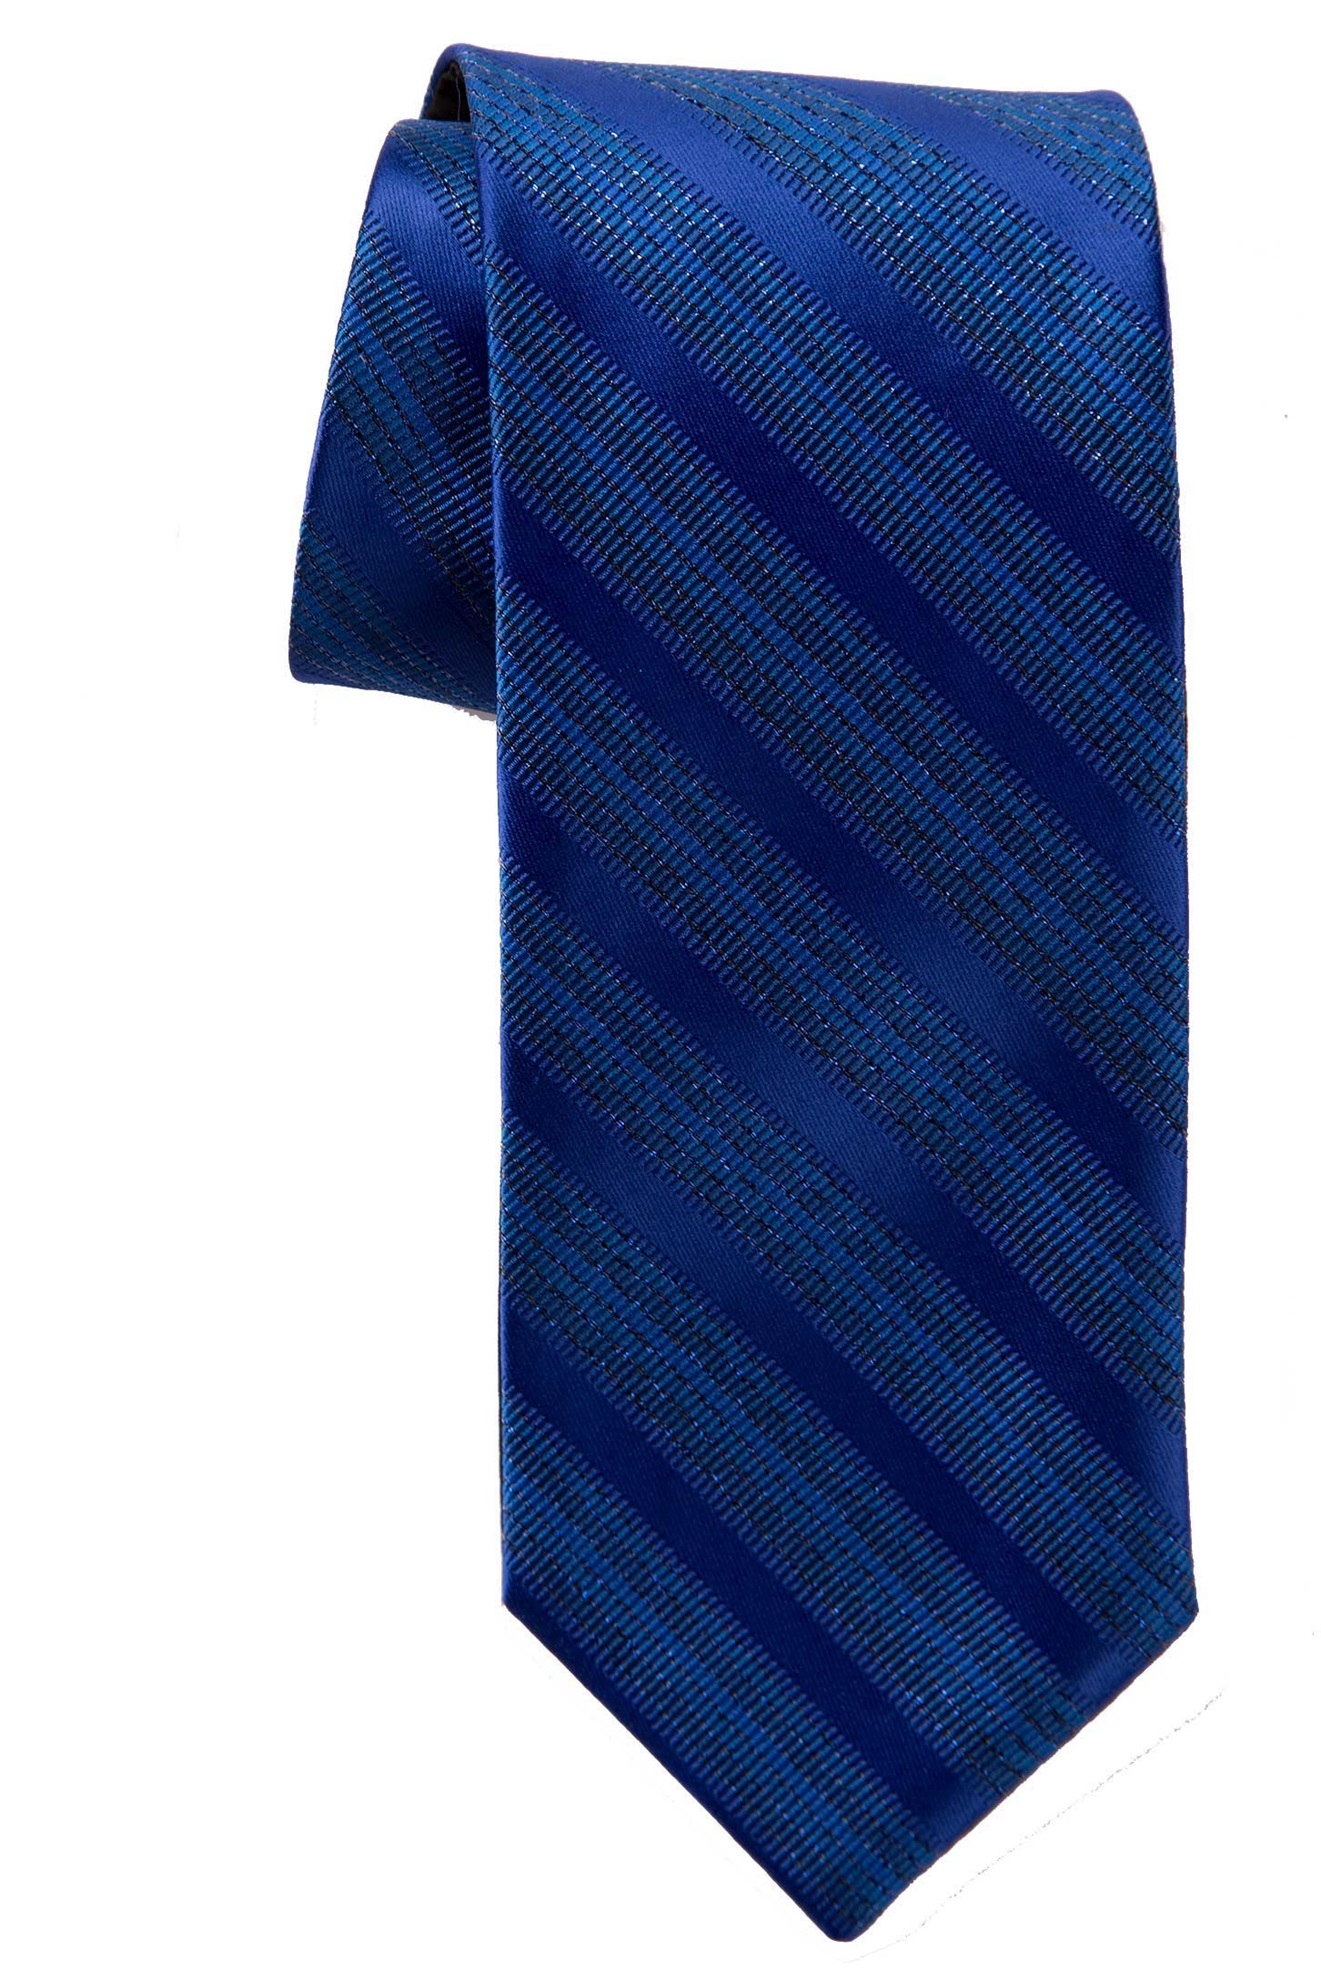 Milroy's Tuxedos - Royal Blue Metallic Multi-Stripe